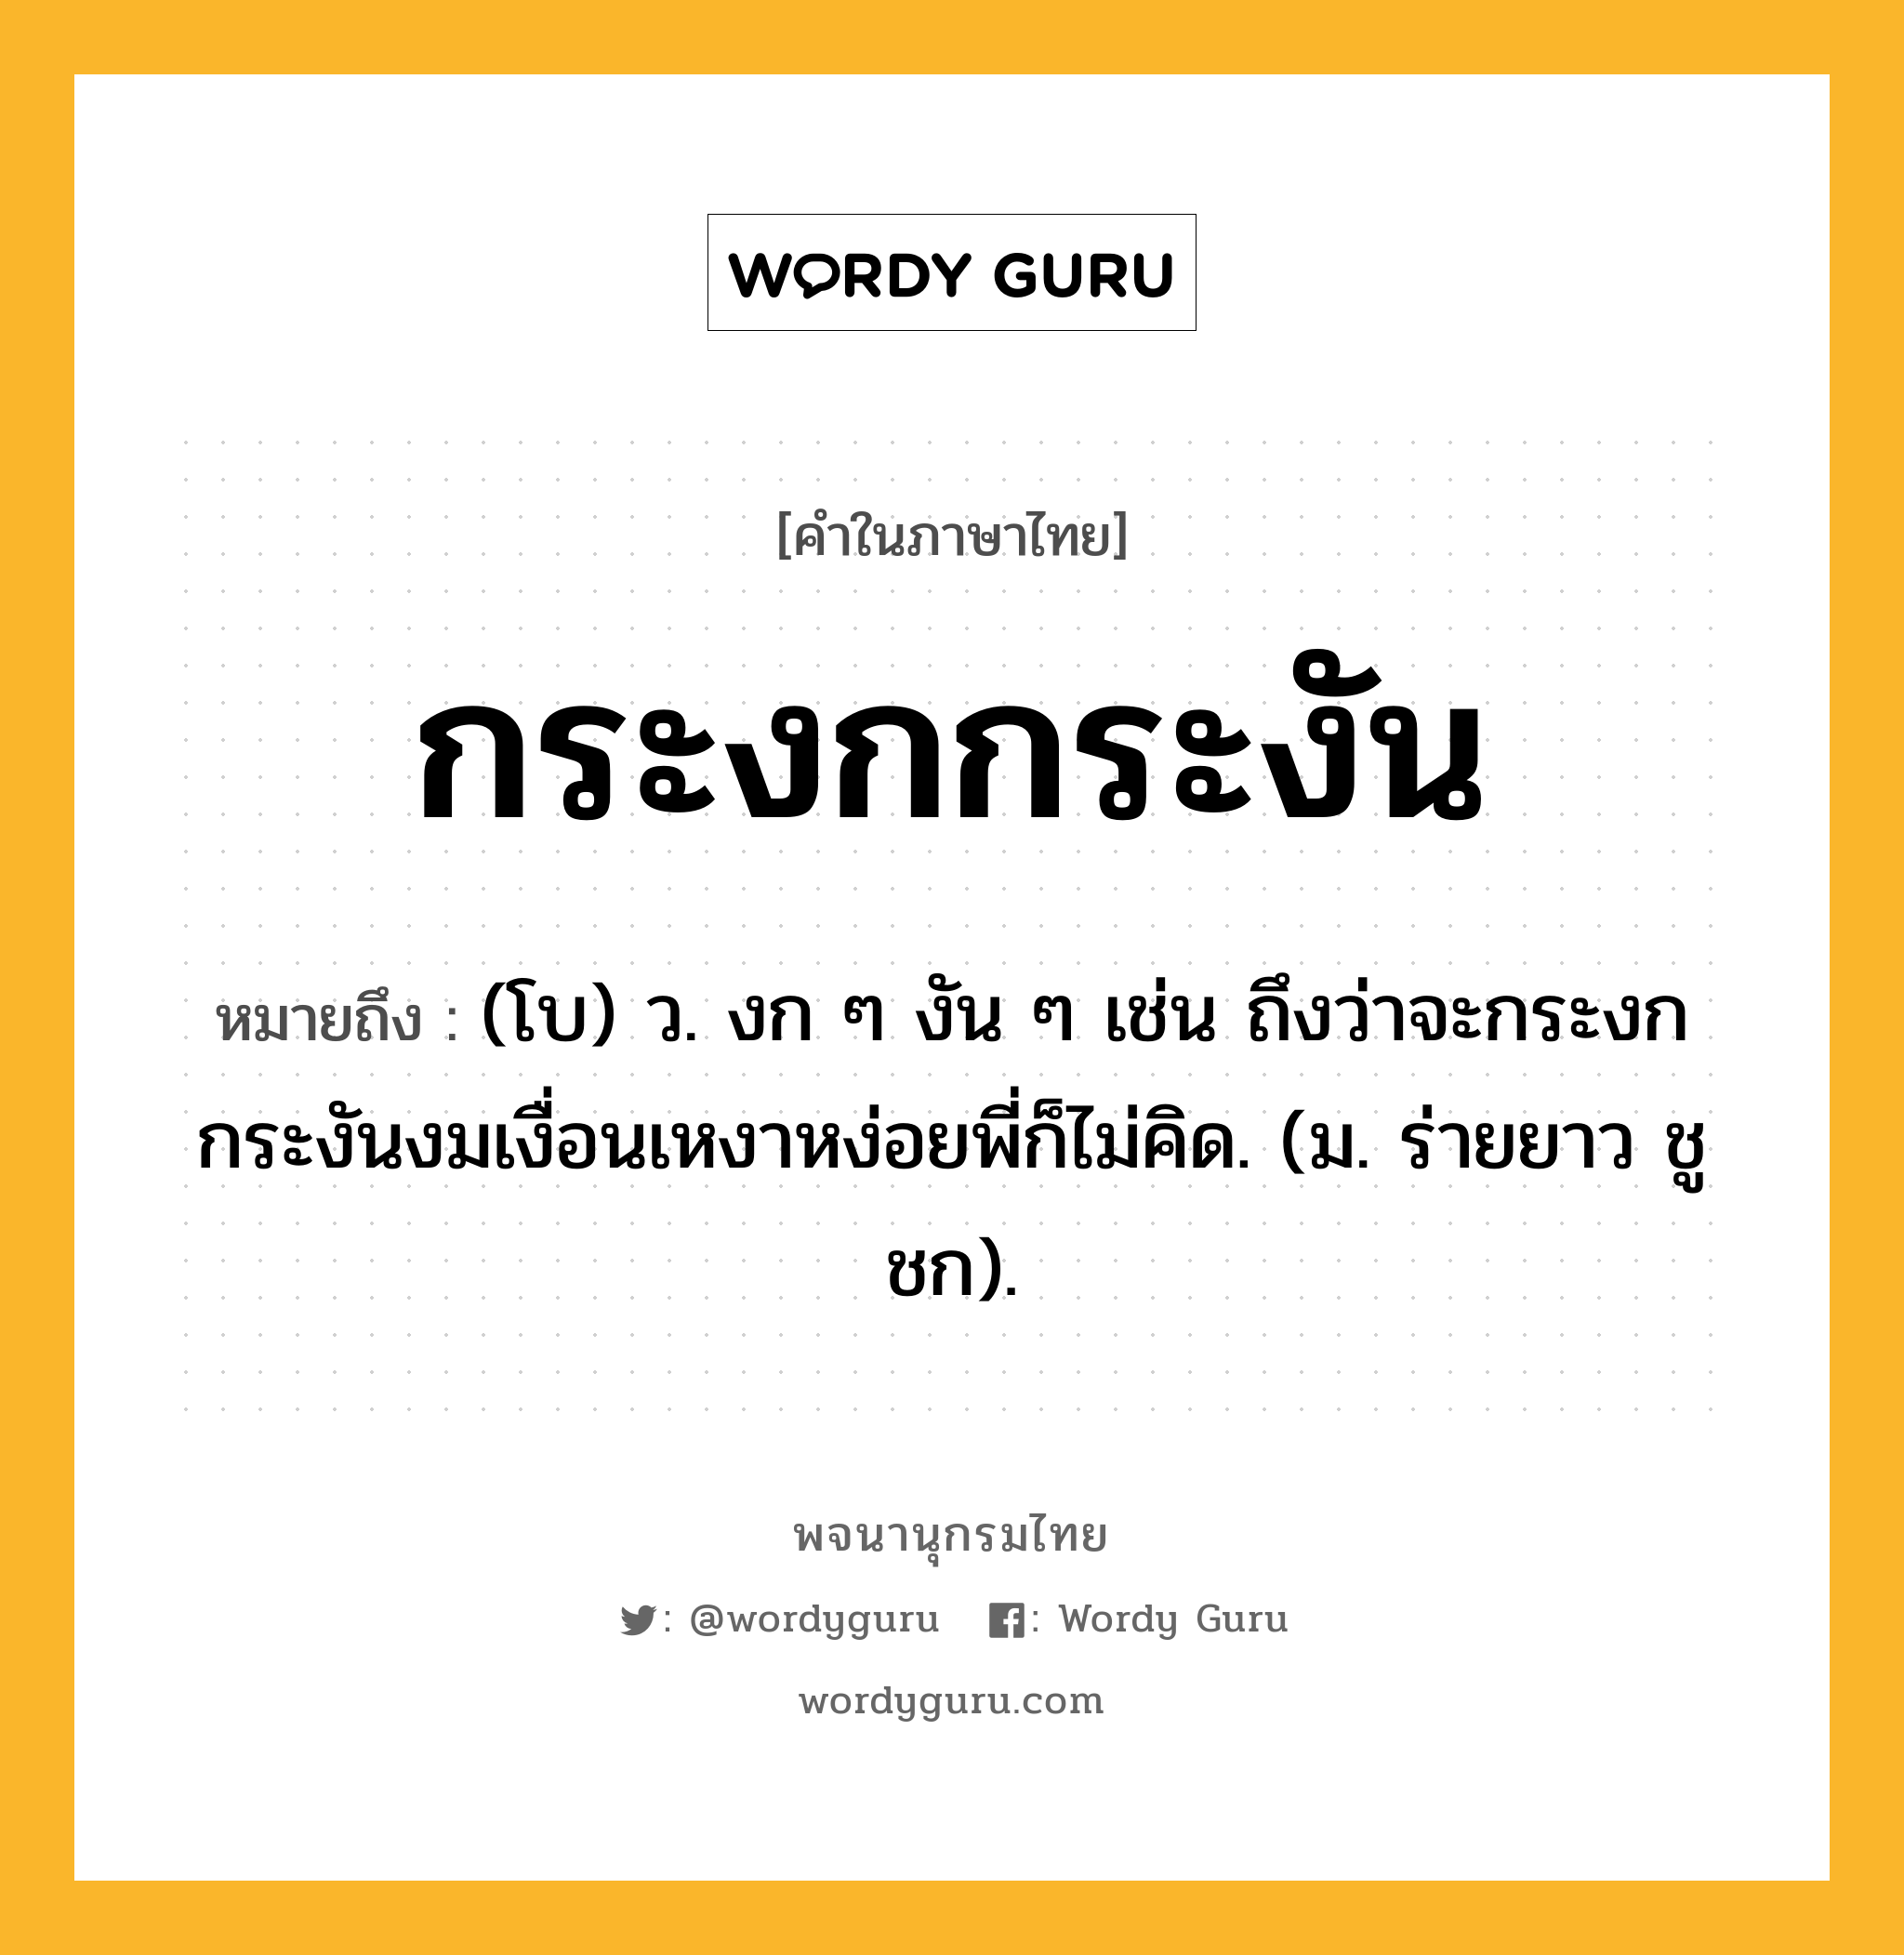 กระงกกระงัน หมายถึงอะไร?, คำในภาษาไทย กระงกกระงัน หมายถึง (โบ) ว. งก ๆ งัน ๆ เช่น ถึงว่าจะกระงกกระงันงมเงื่อนเหงาหง่อยพี่ก็ไม่คิด. (ม. ร่ายยาว ชูชก).